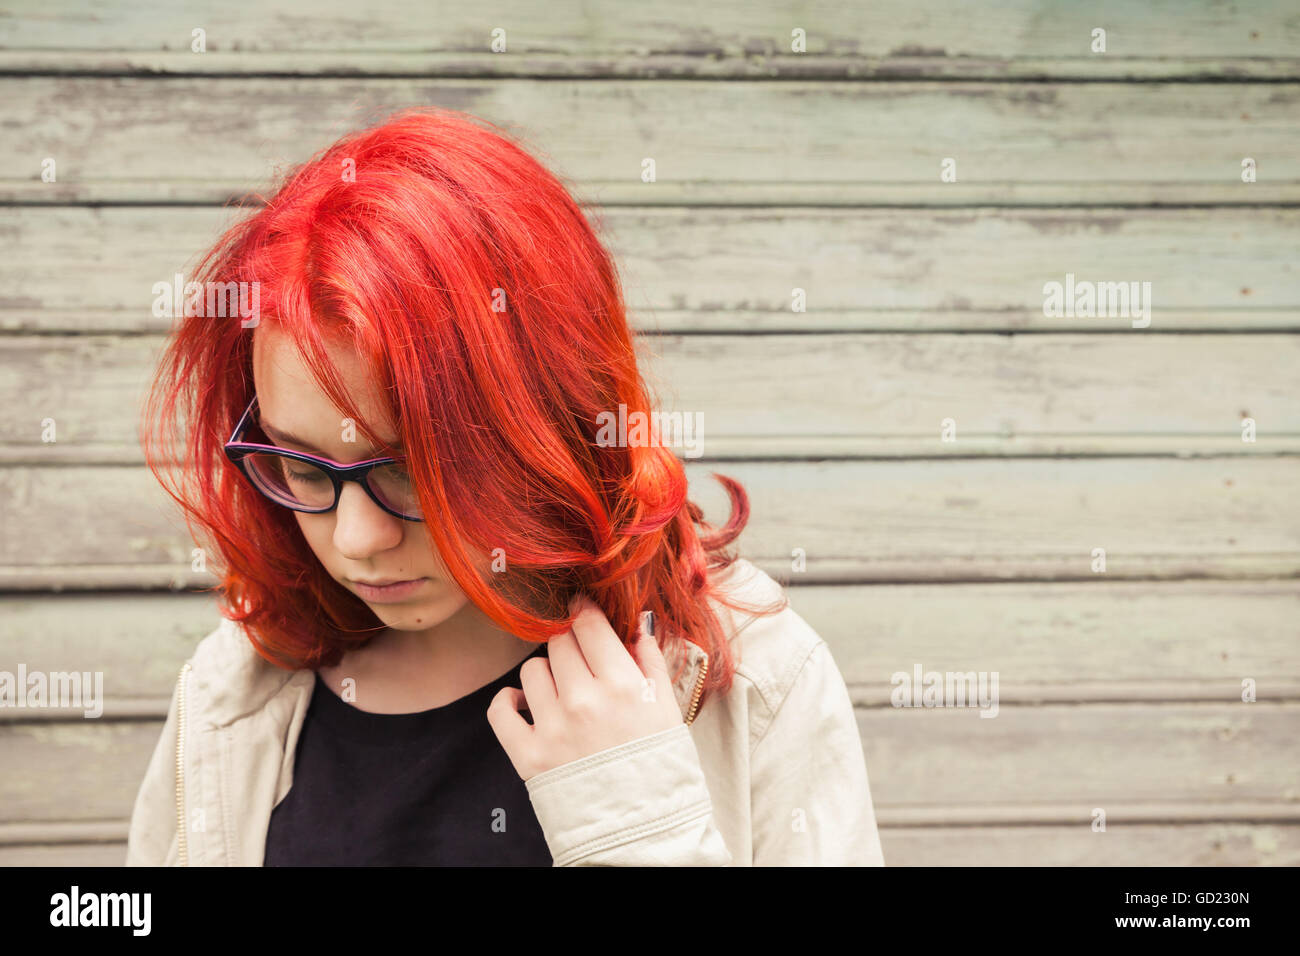 Caucasian teenager girl à lunettes avec des cheveux rouge vif, portrait en extérieur gros plan sur green grungy wooden wall Banque D'Images